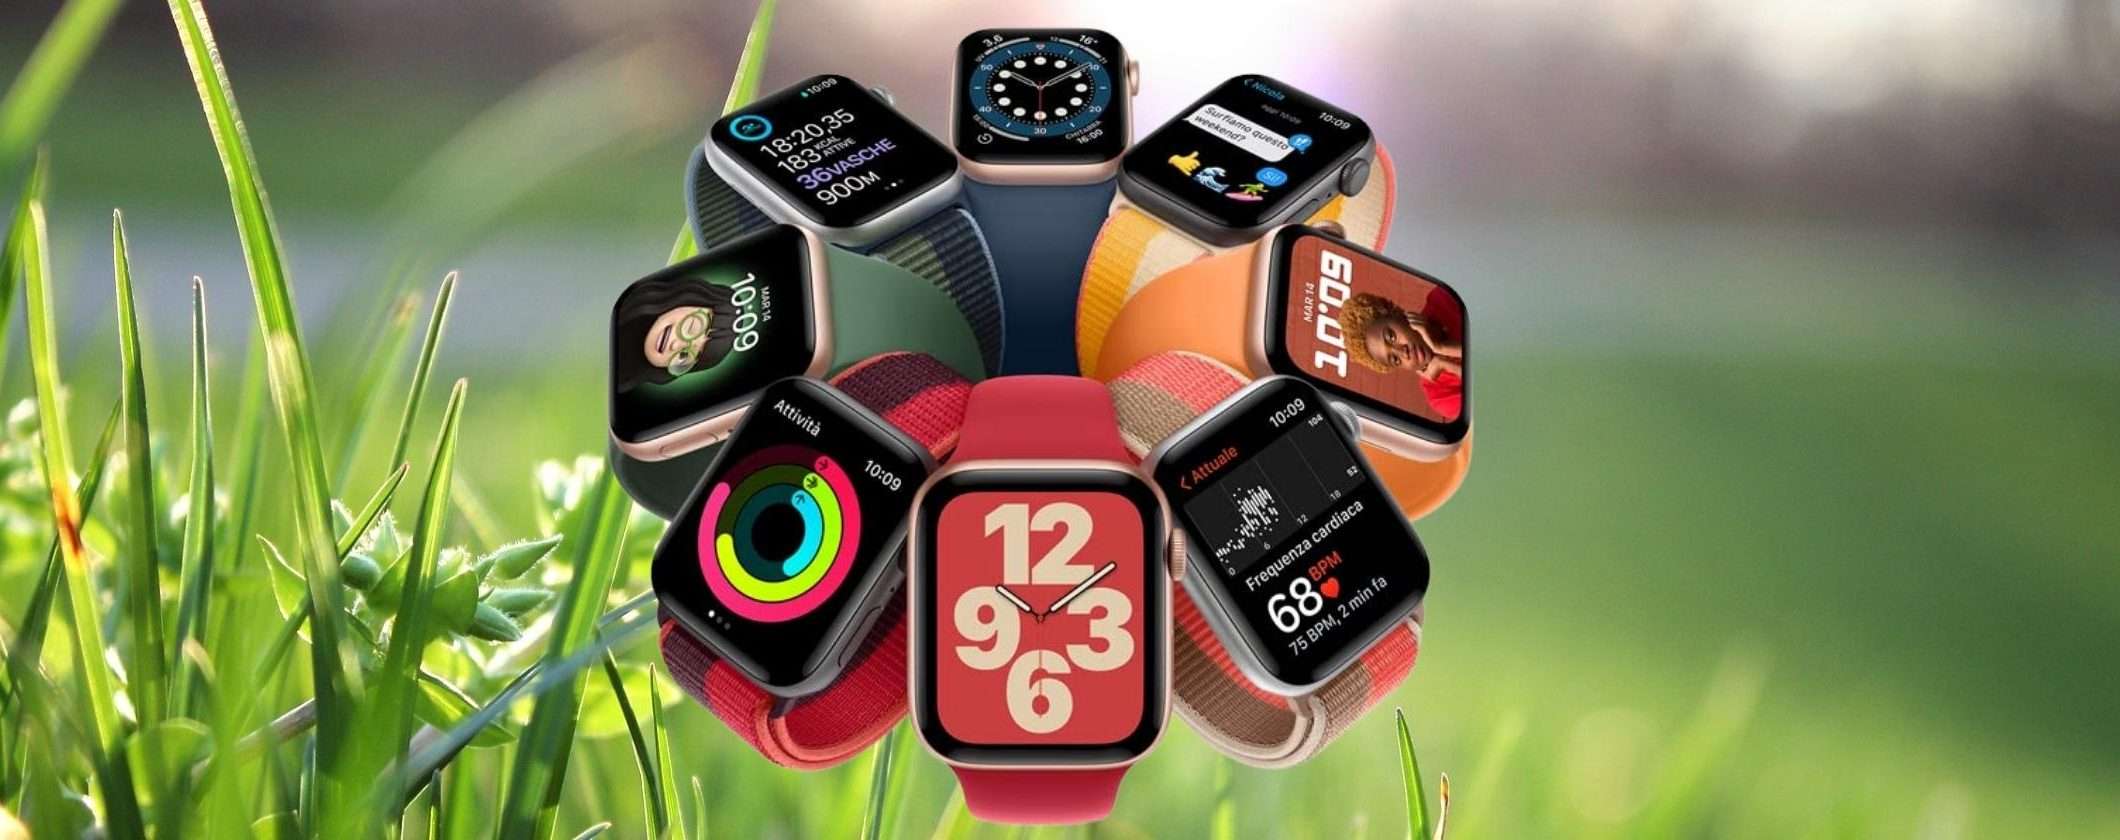 Apple Watch SE: poca spesa massima resa